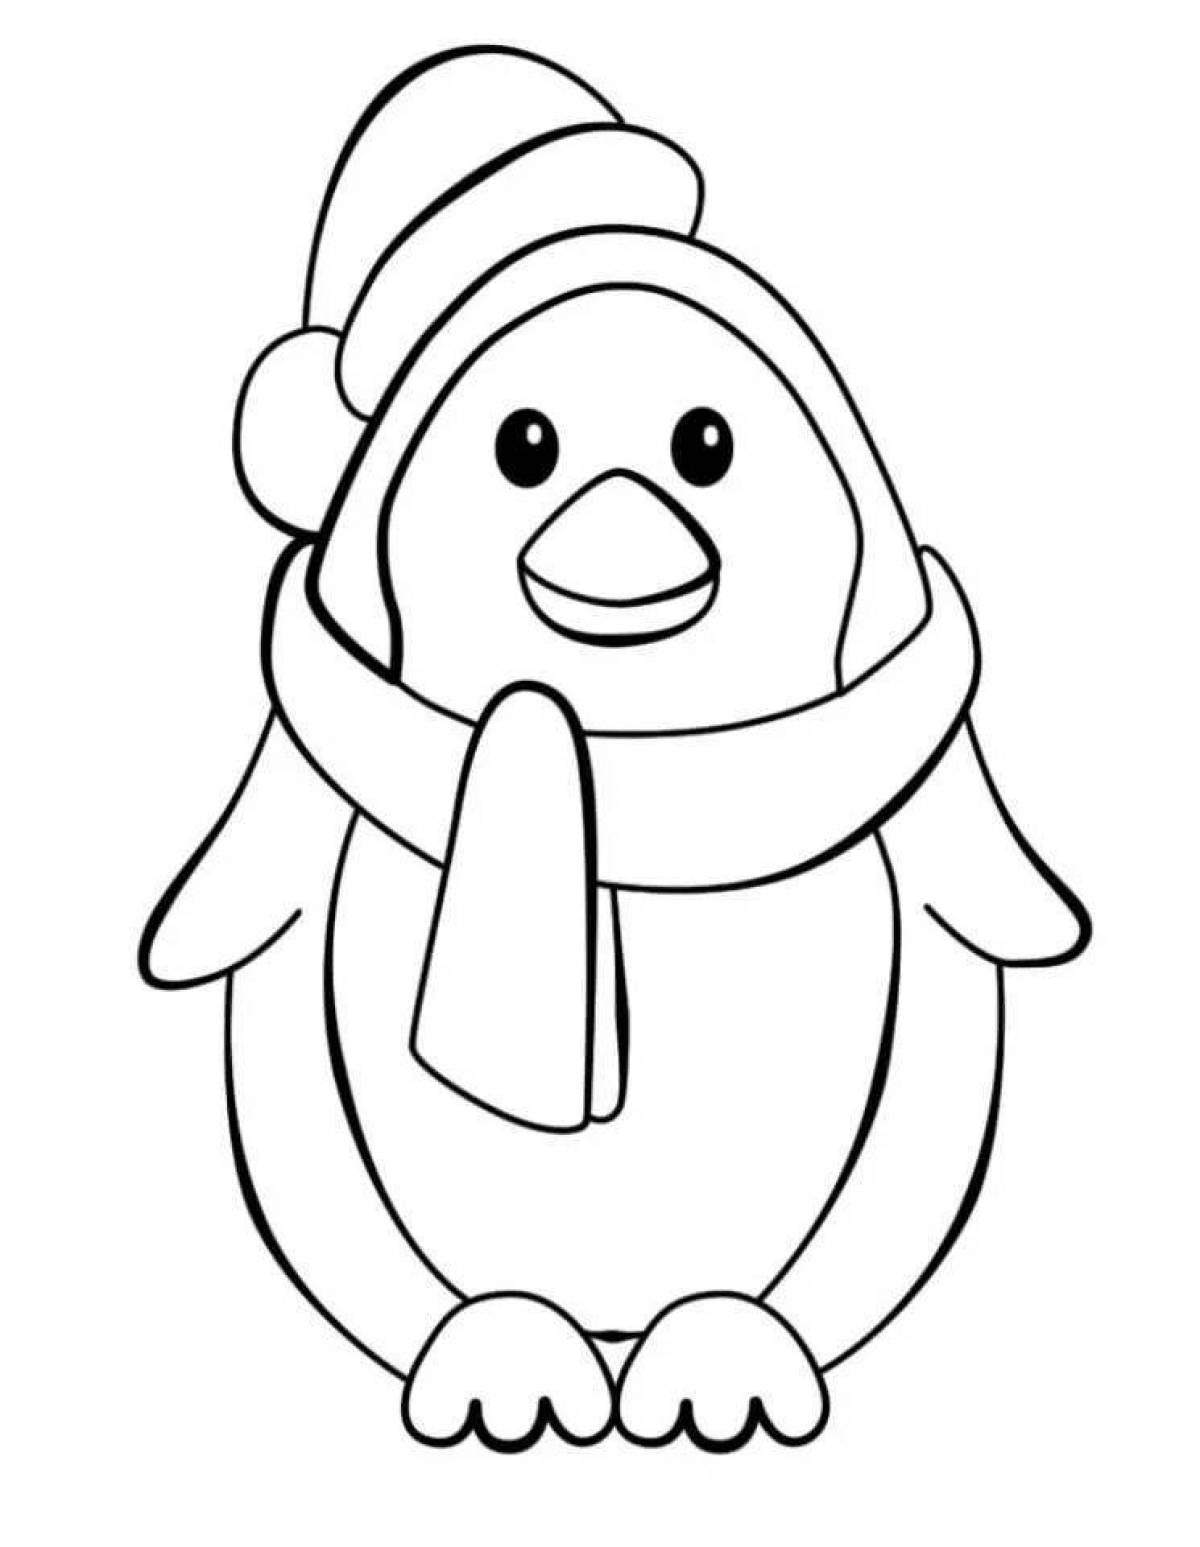 Inspiring penguin drawing for kids